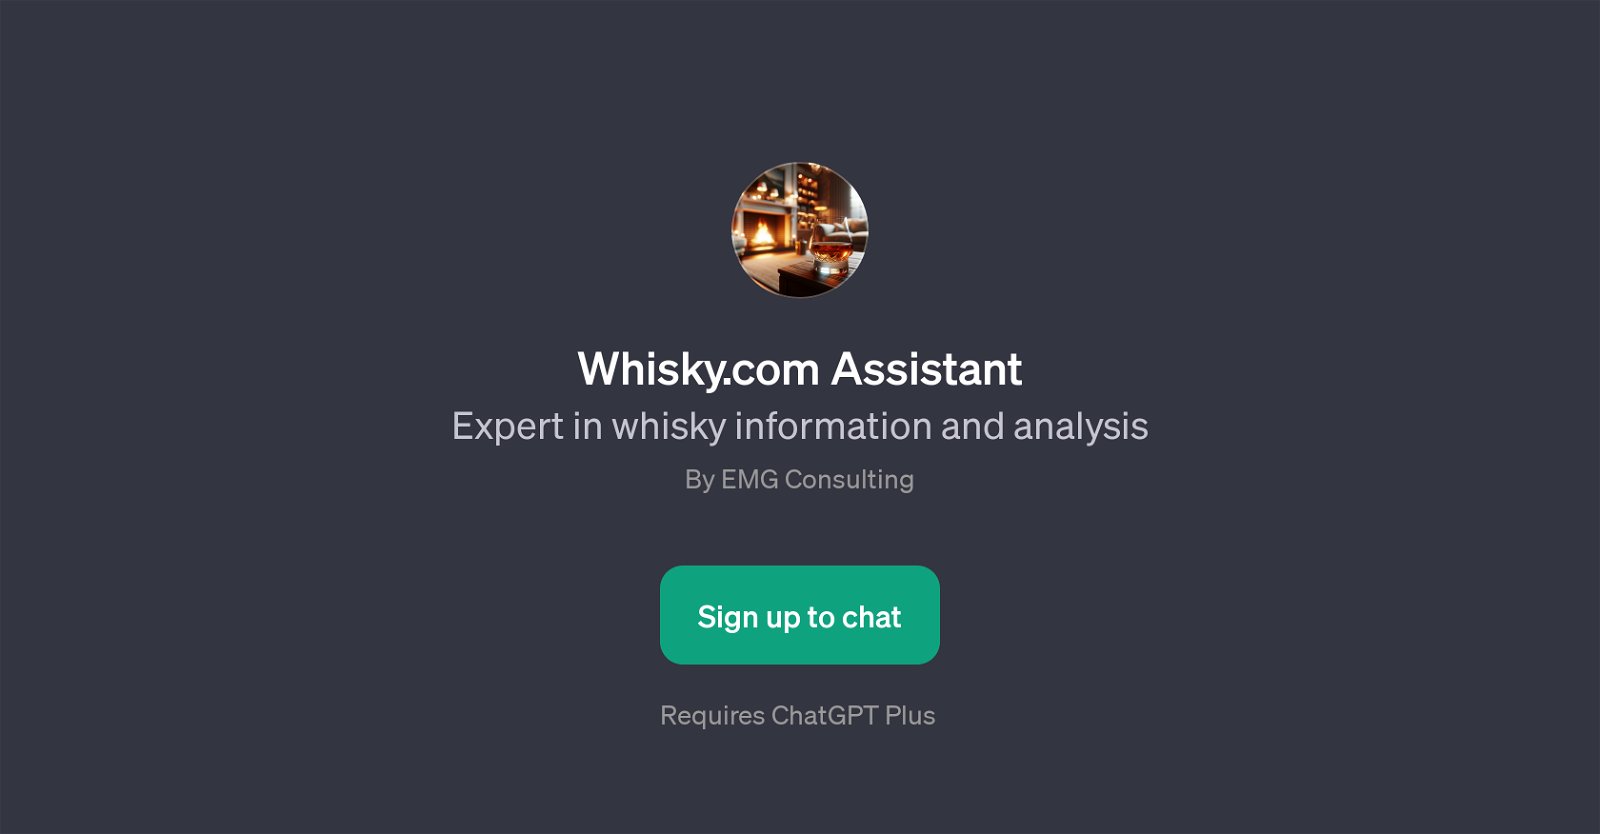 Whisky.com Assistant website